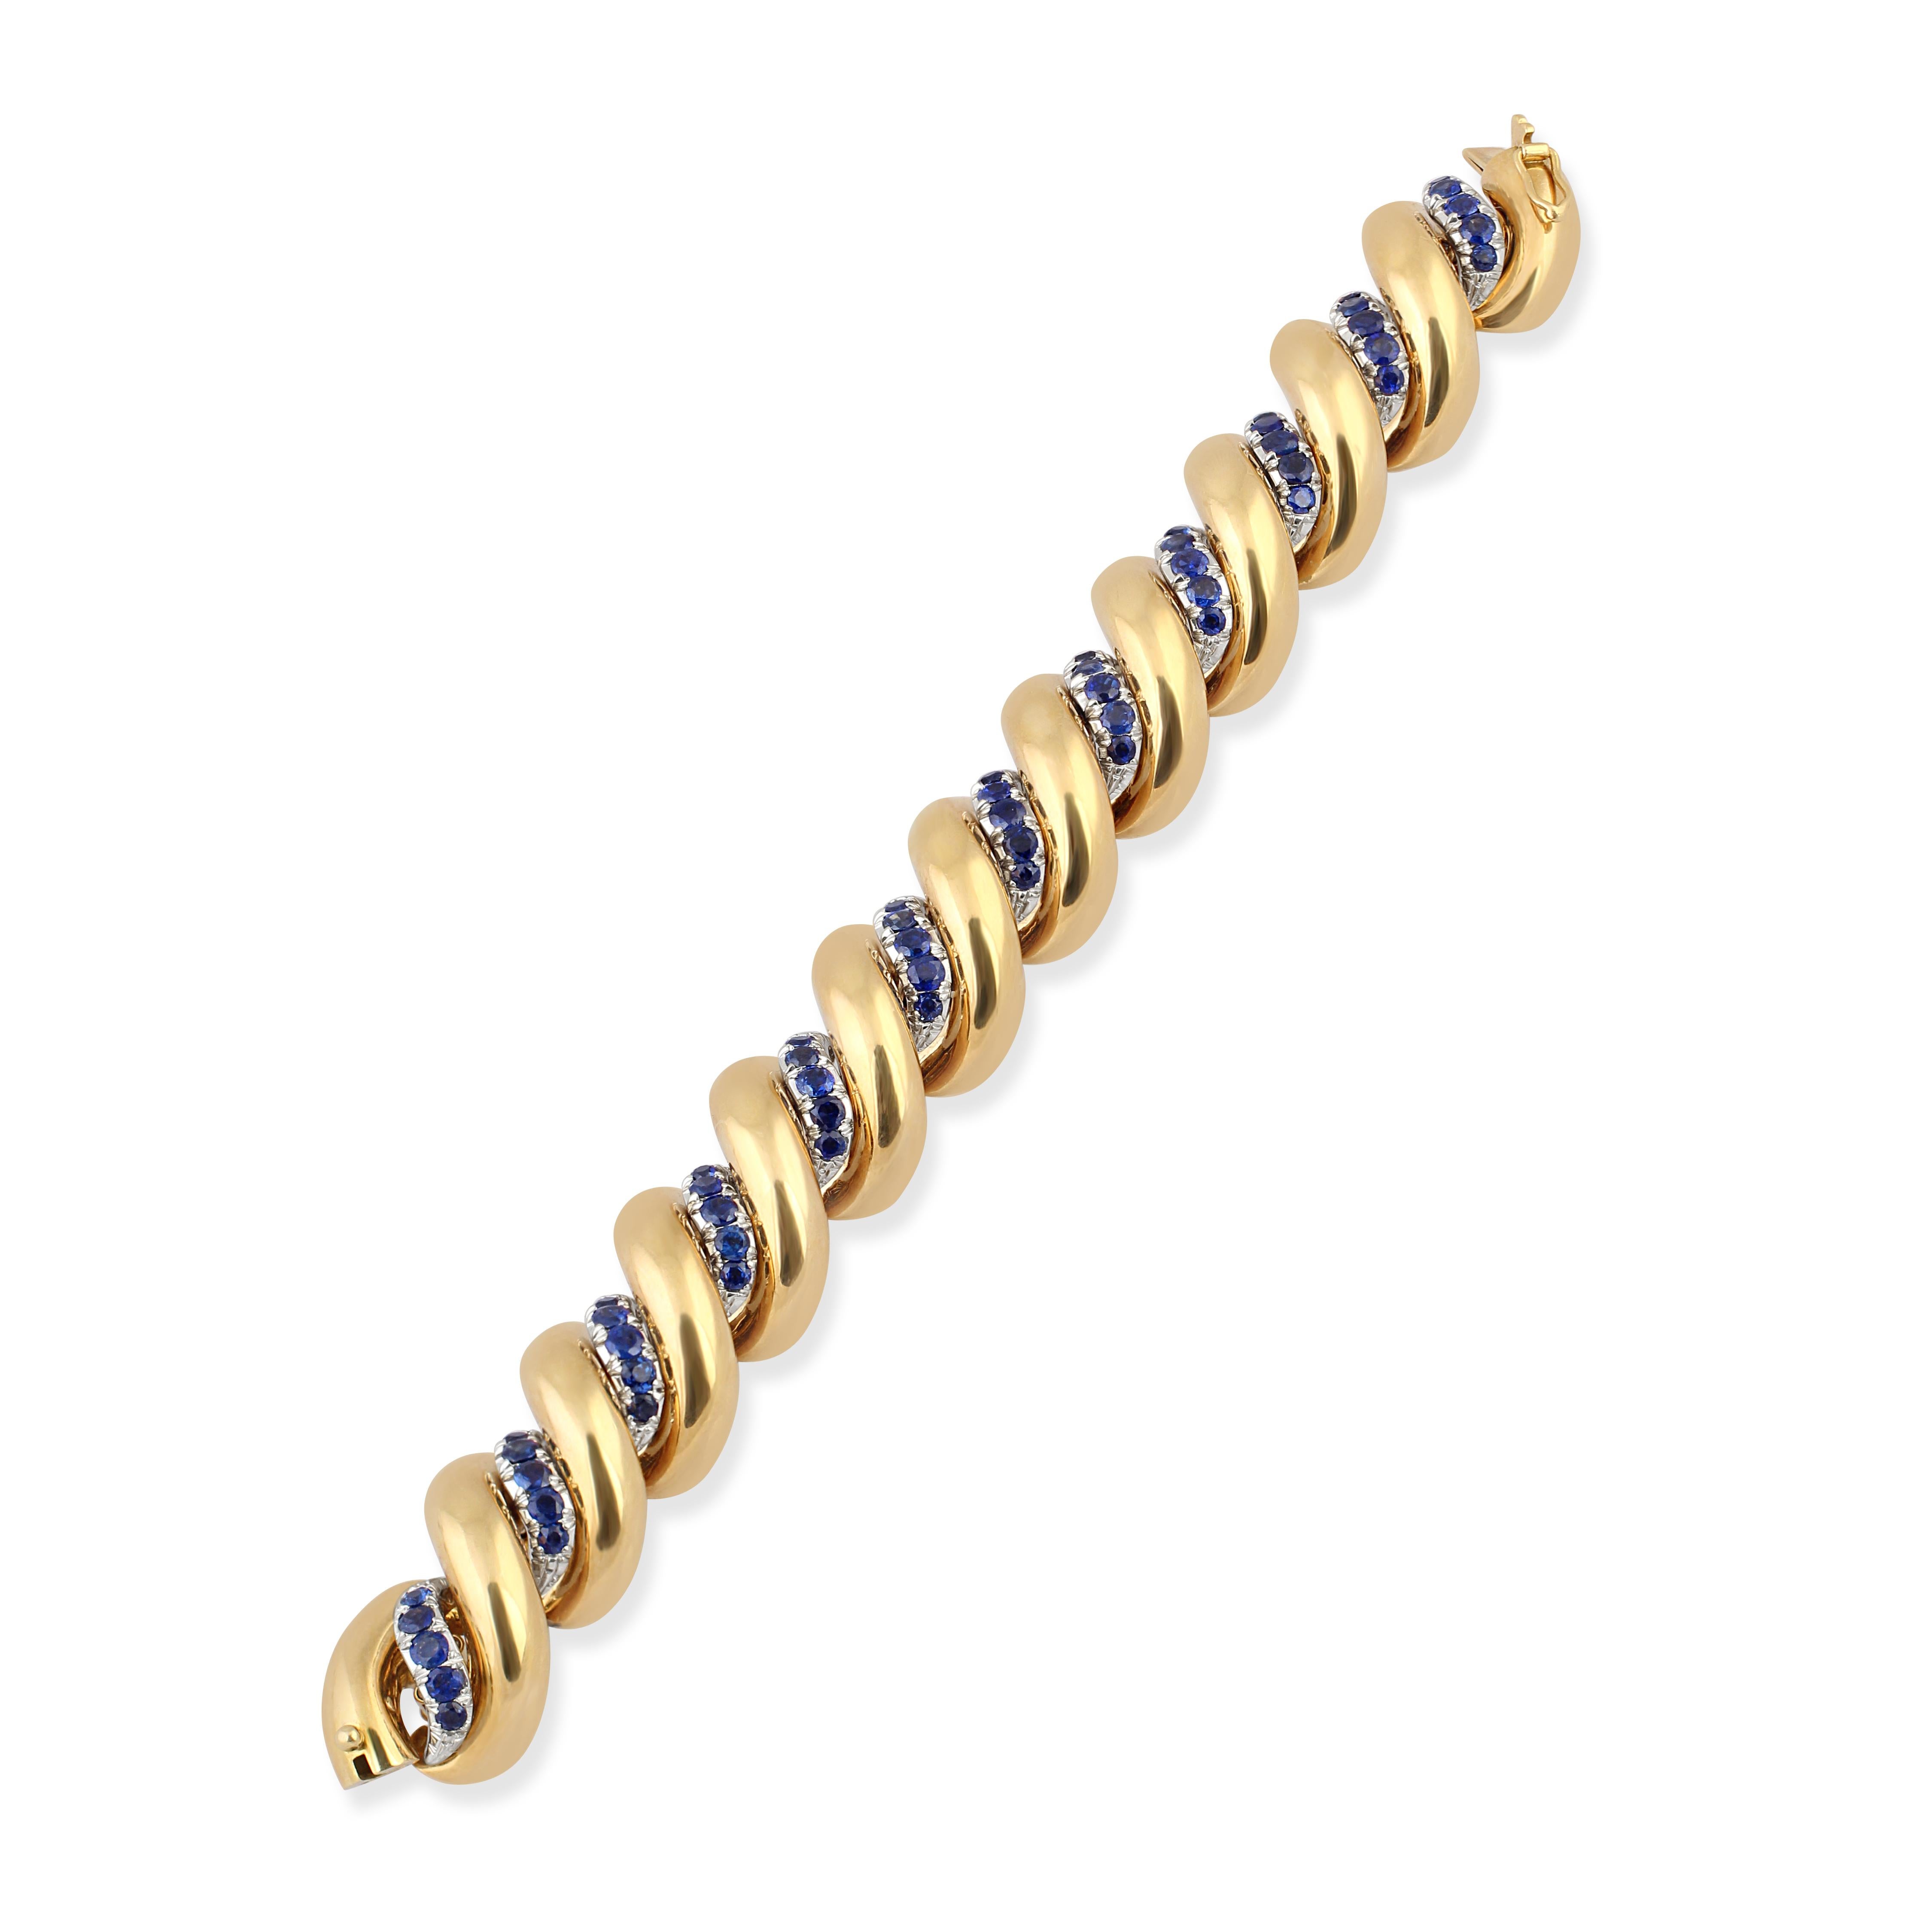 Un bracelet en or 18 carats au design torsadé, espacé de saphirs.

Signé : E.Nannini
Longueur : 19,5 cm
Poids : 125gr
Origine : Milan, Italie
